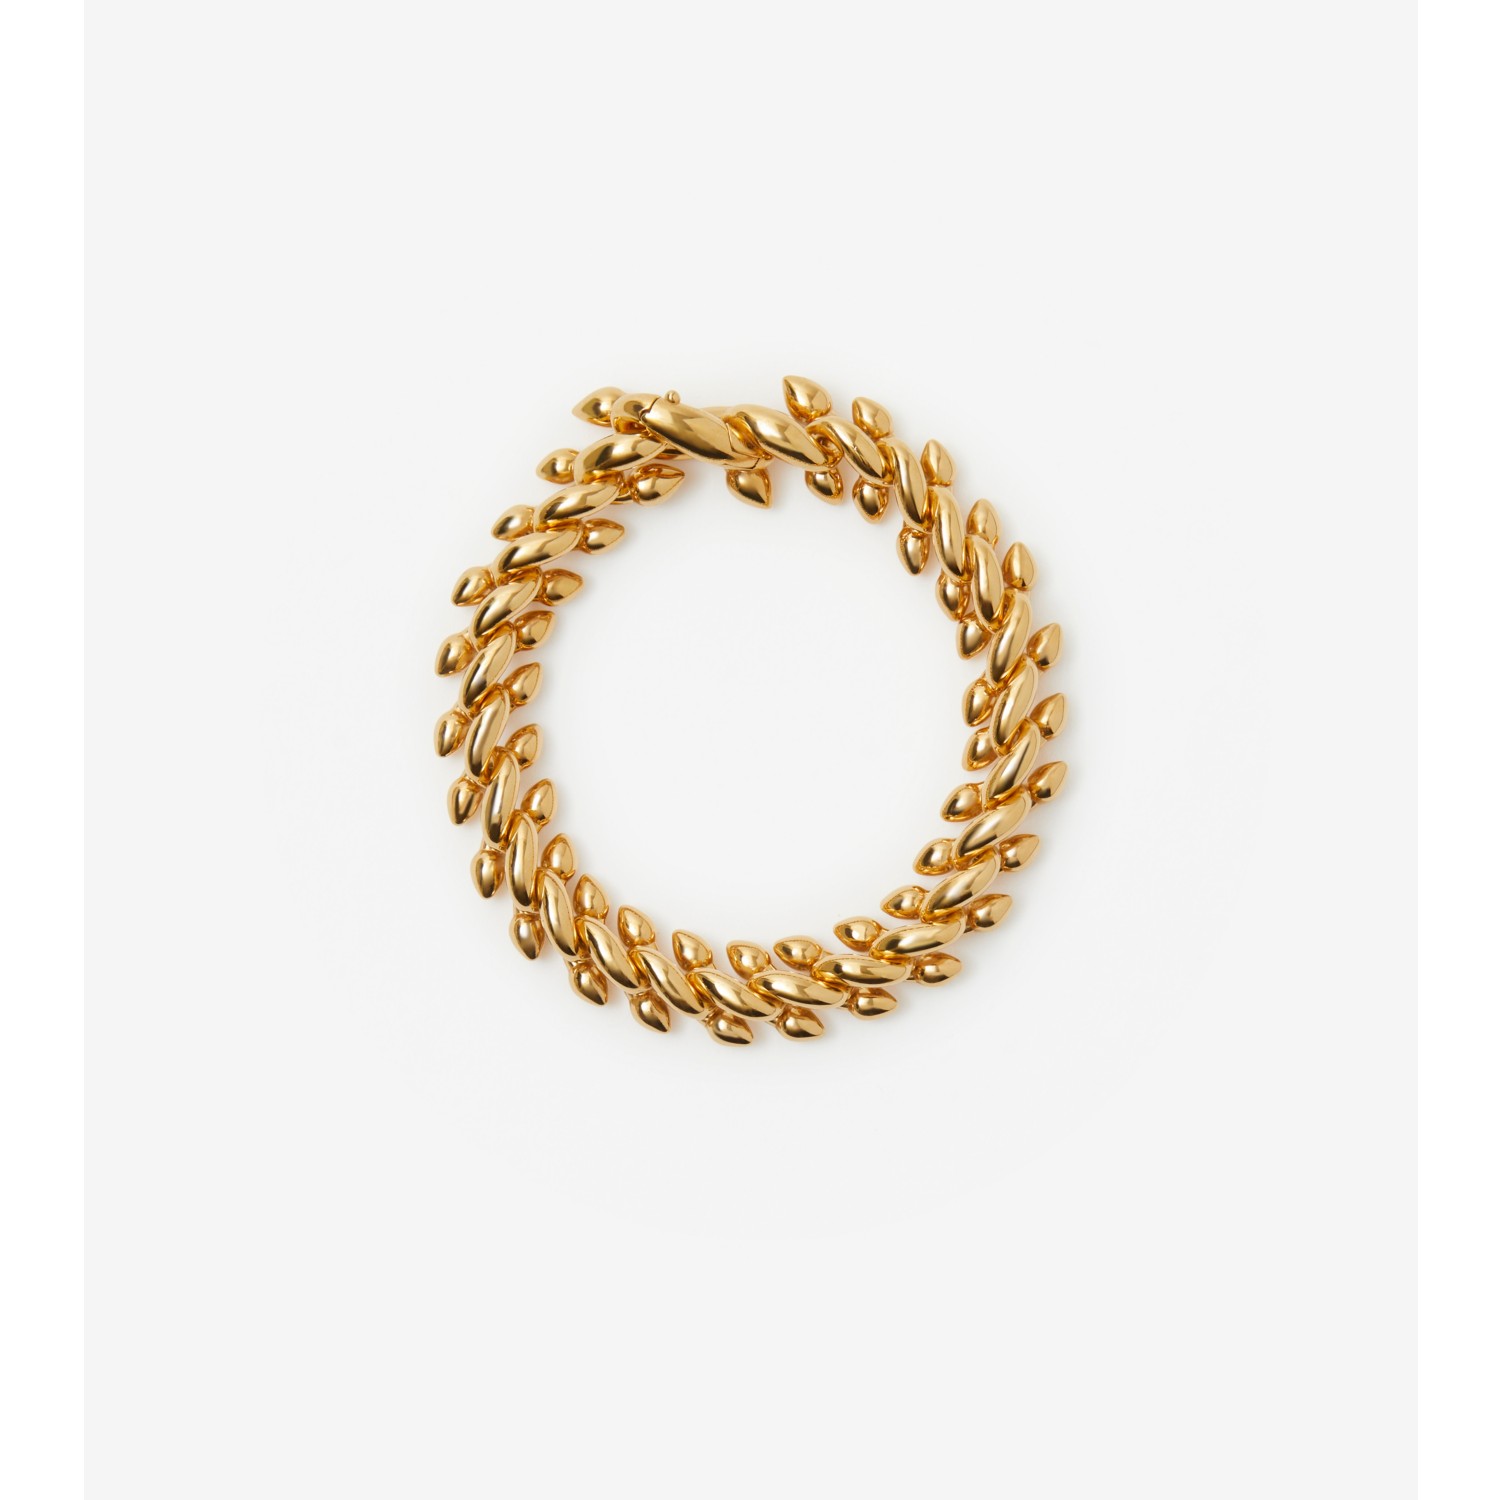 Heritage Bracelet in Gold - Size 7.5